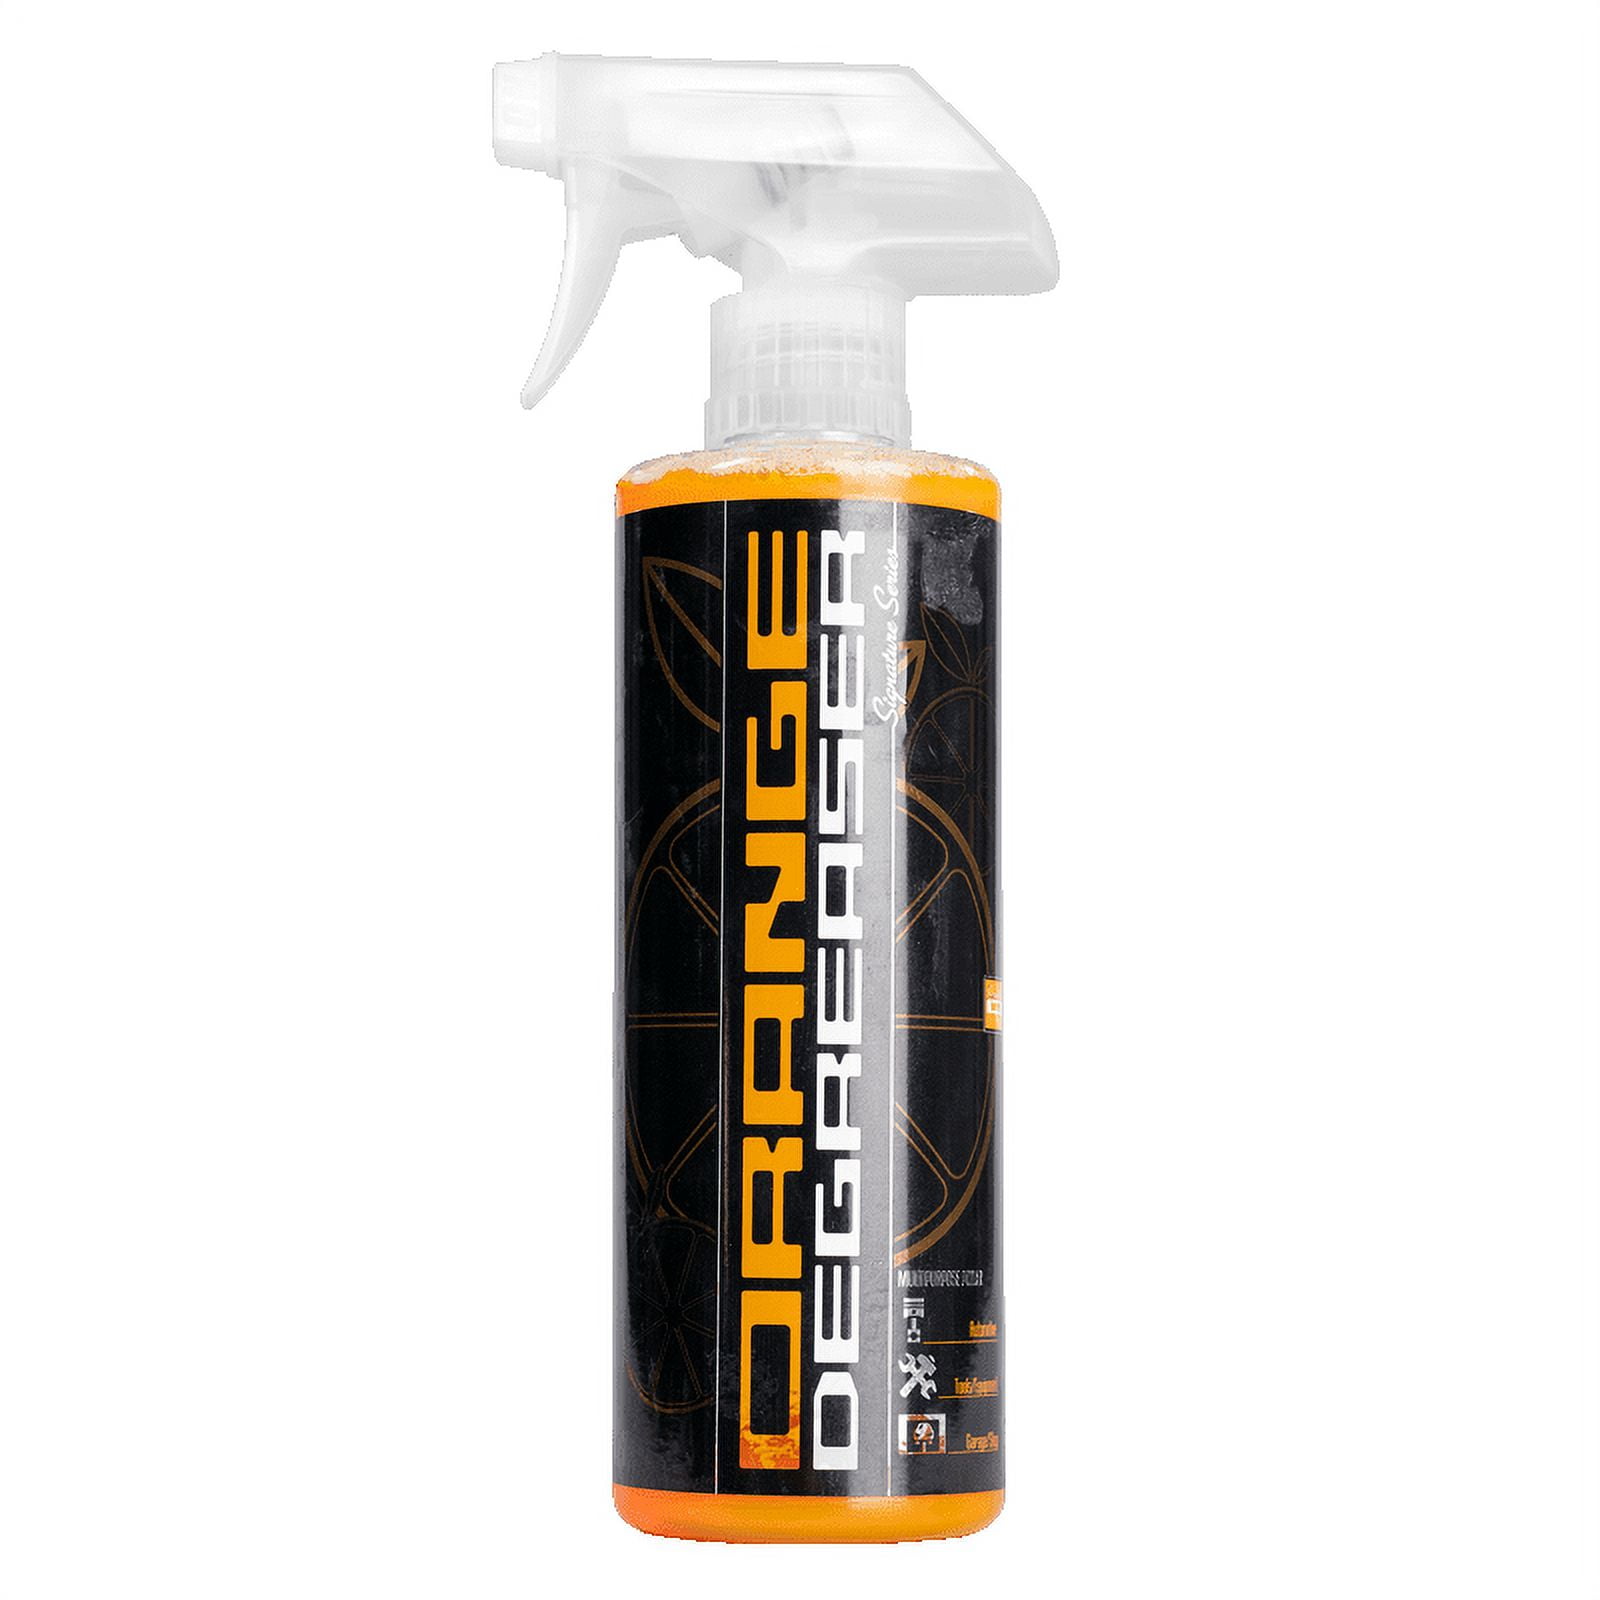 Orange Lightning Multi-purpose Degreaser Cleaner — 32-Oz. Spray Bottle by  Monster Labs